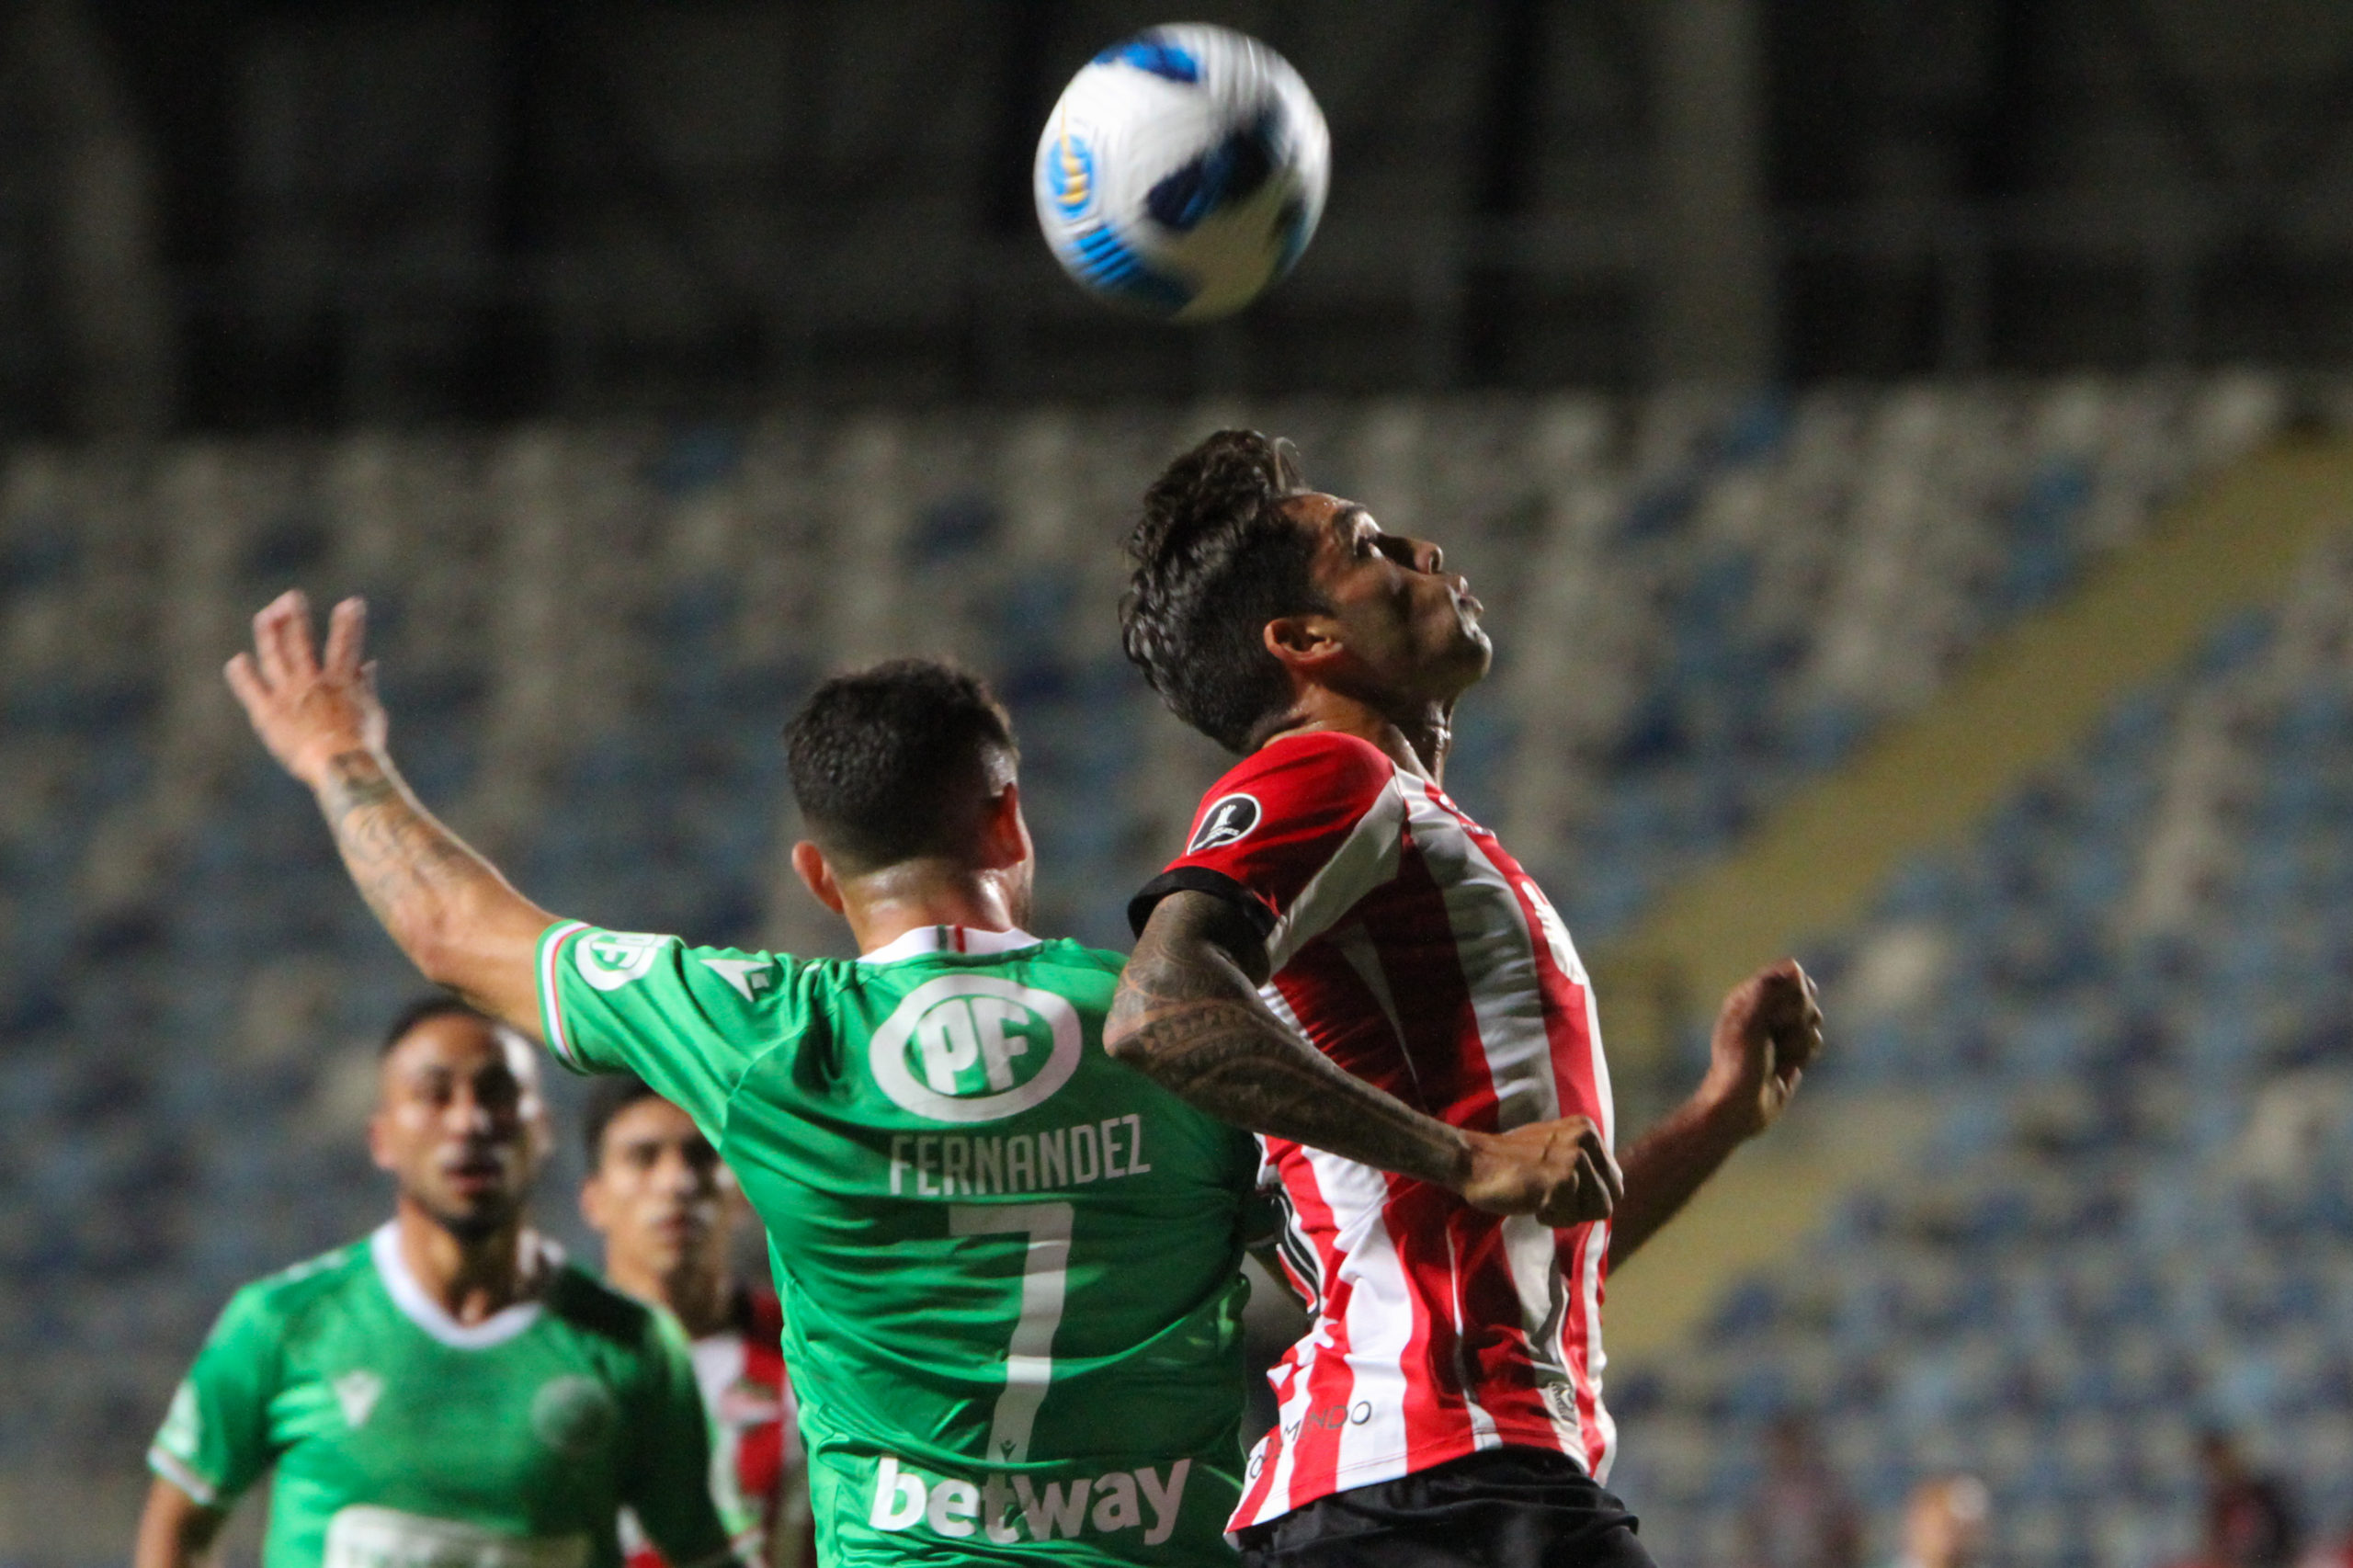 Audax venció 1-0 a Estudiantes en la Libertadores. Foto: José Raúl Plaza - Prensa Audax Italiano